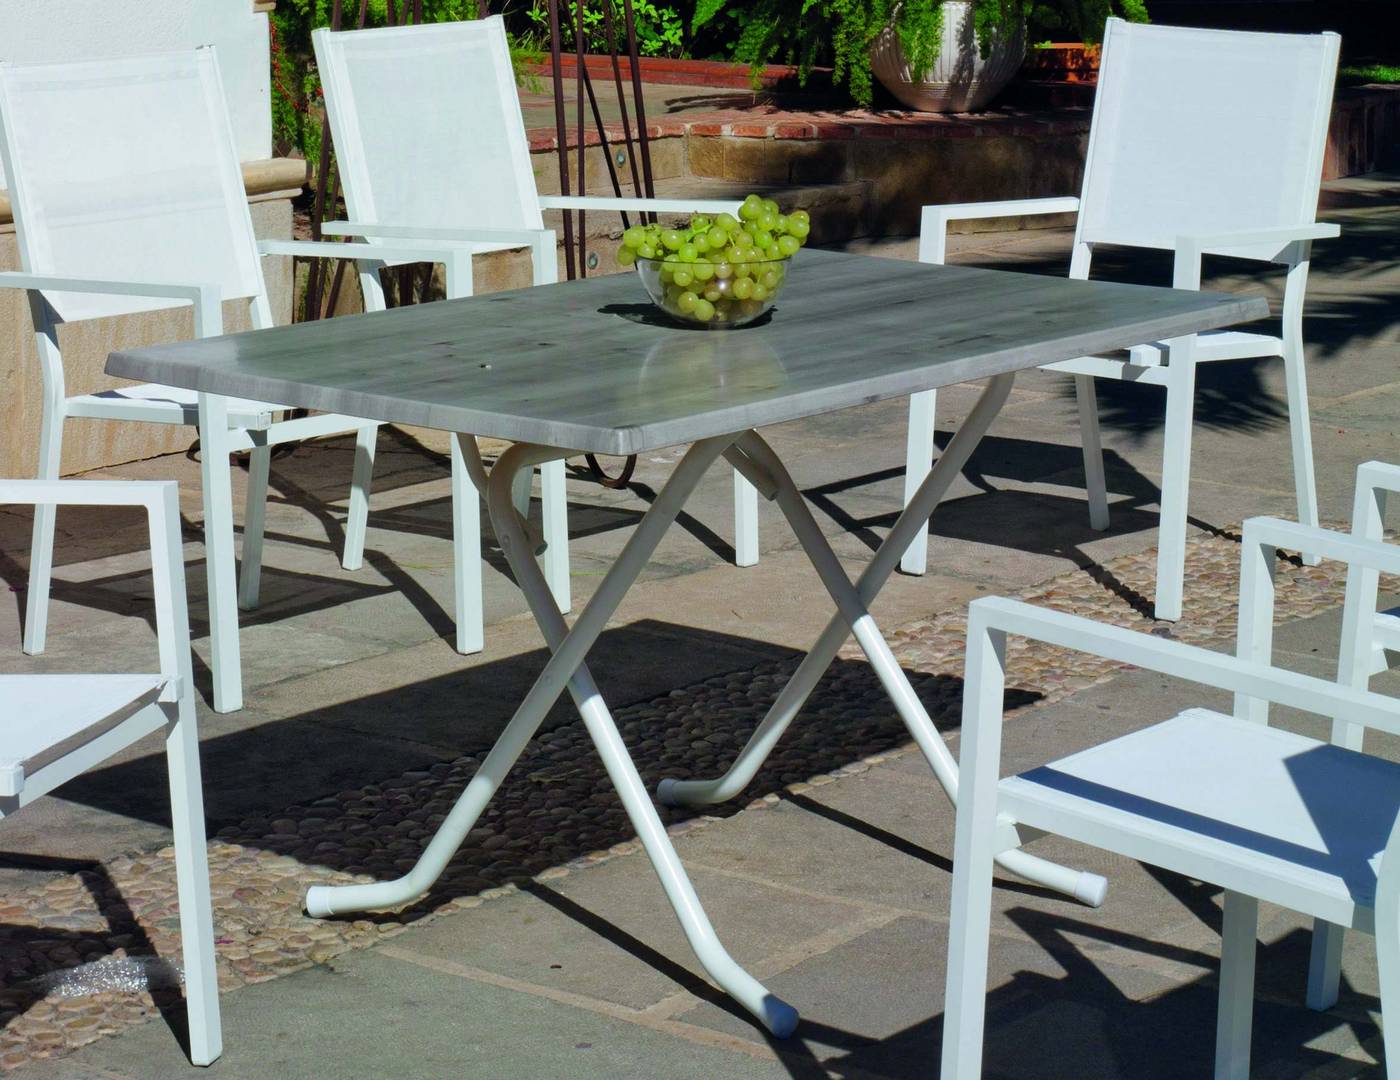 Set Aluminio Arian-Roma 140-6 - Conjunto aluminio color blanco: mesa rectangular plegable de 140 cm. con tablero de heverzaplus + 6 sillones de aluminio y textilen